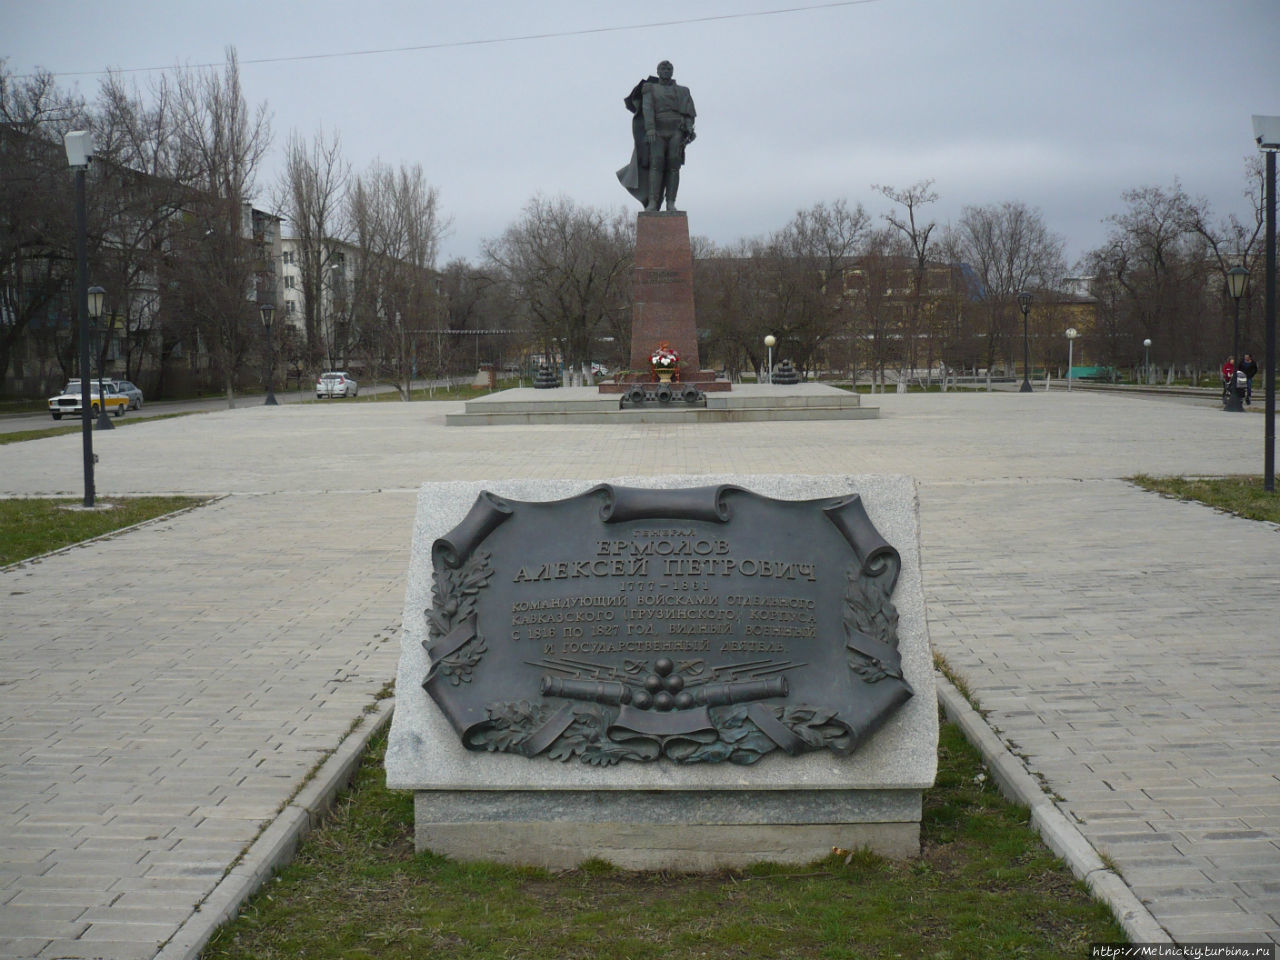 Памятник генералу Ермолову / The monument to General Yermolov